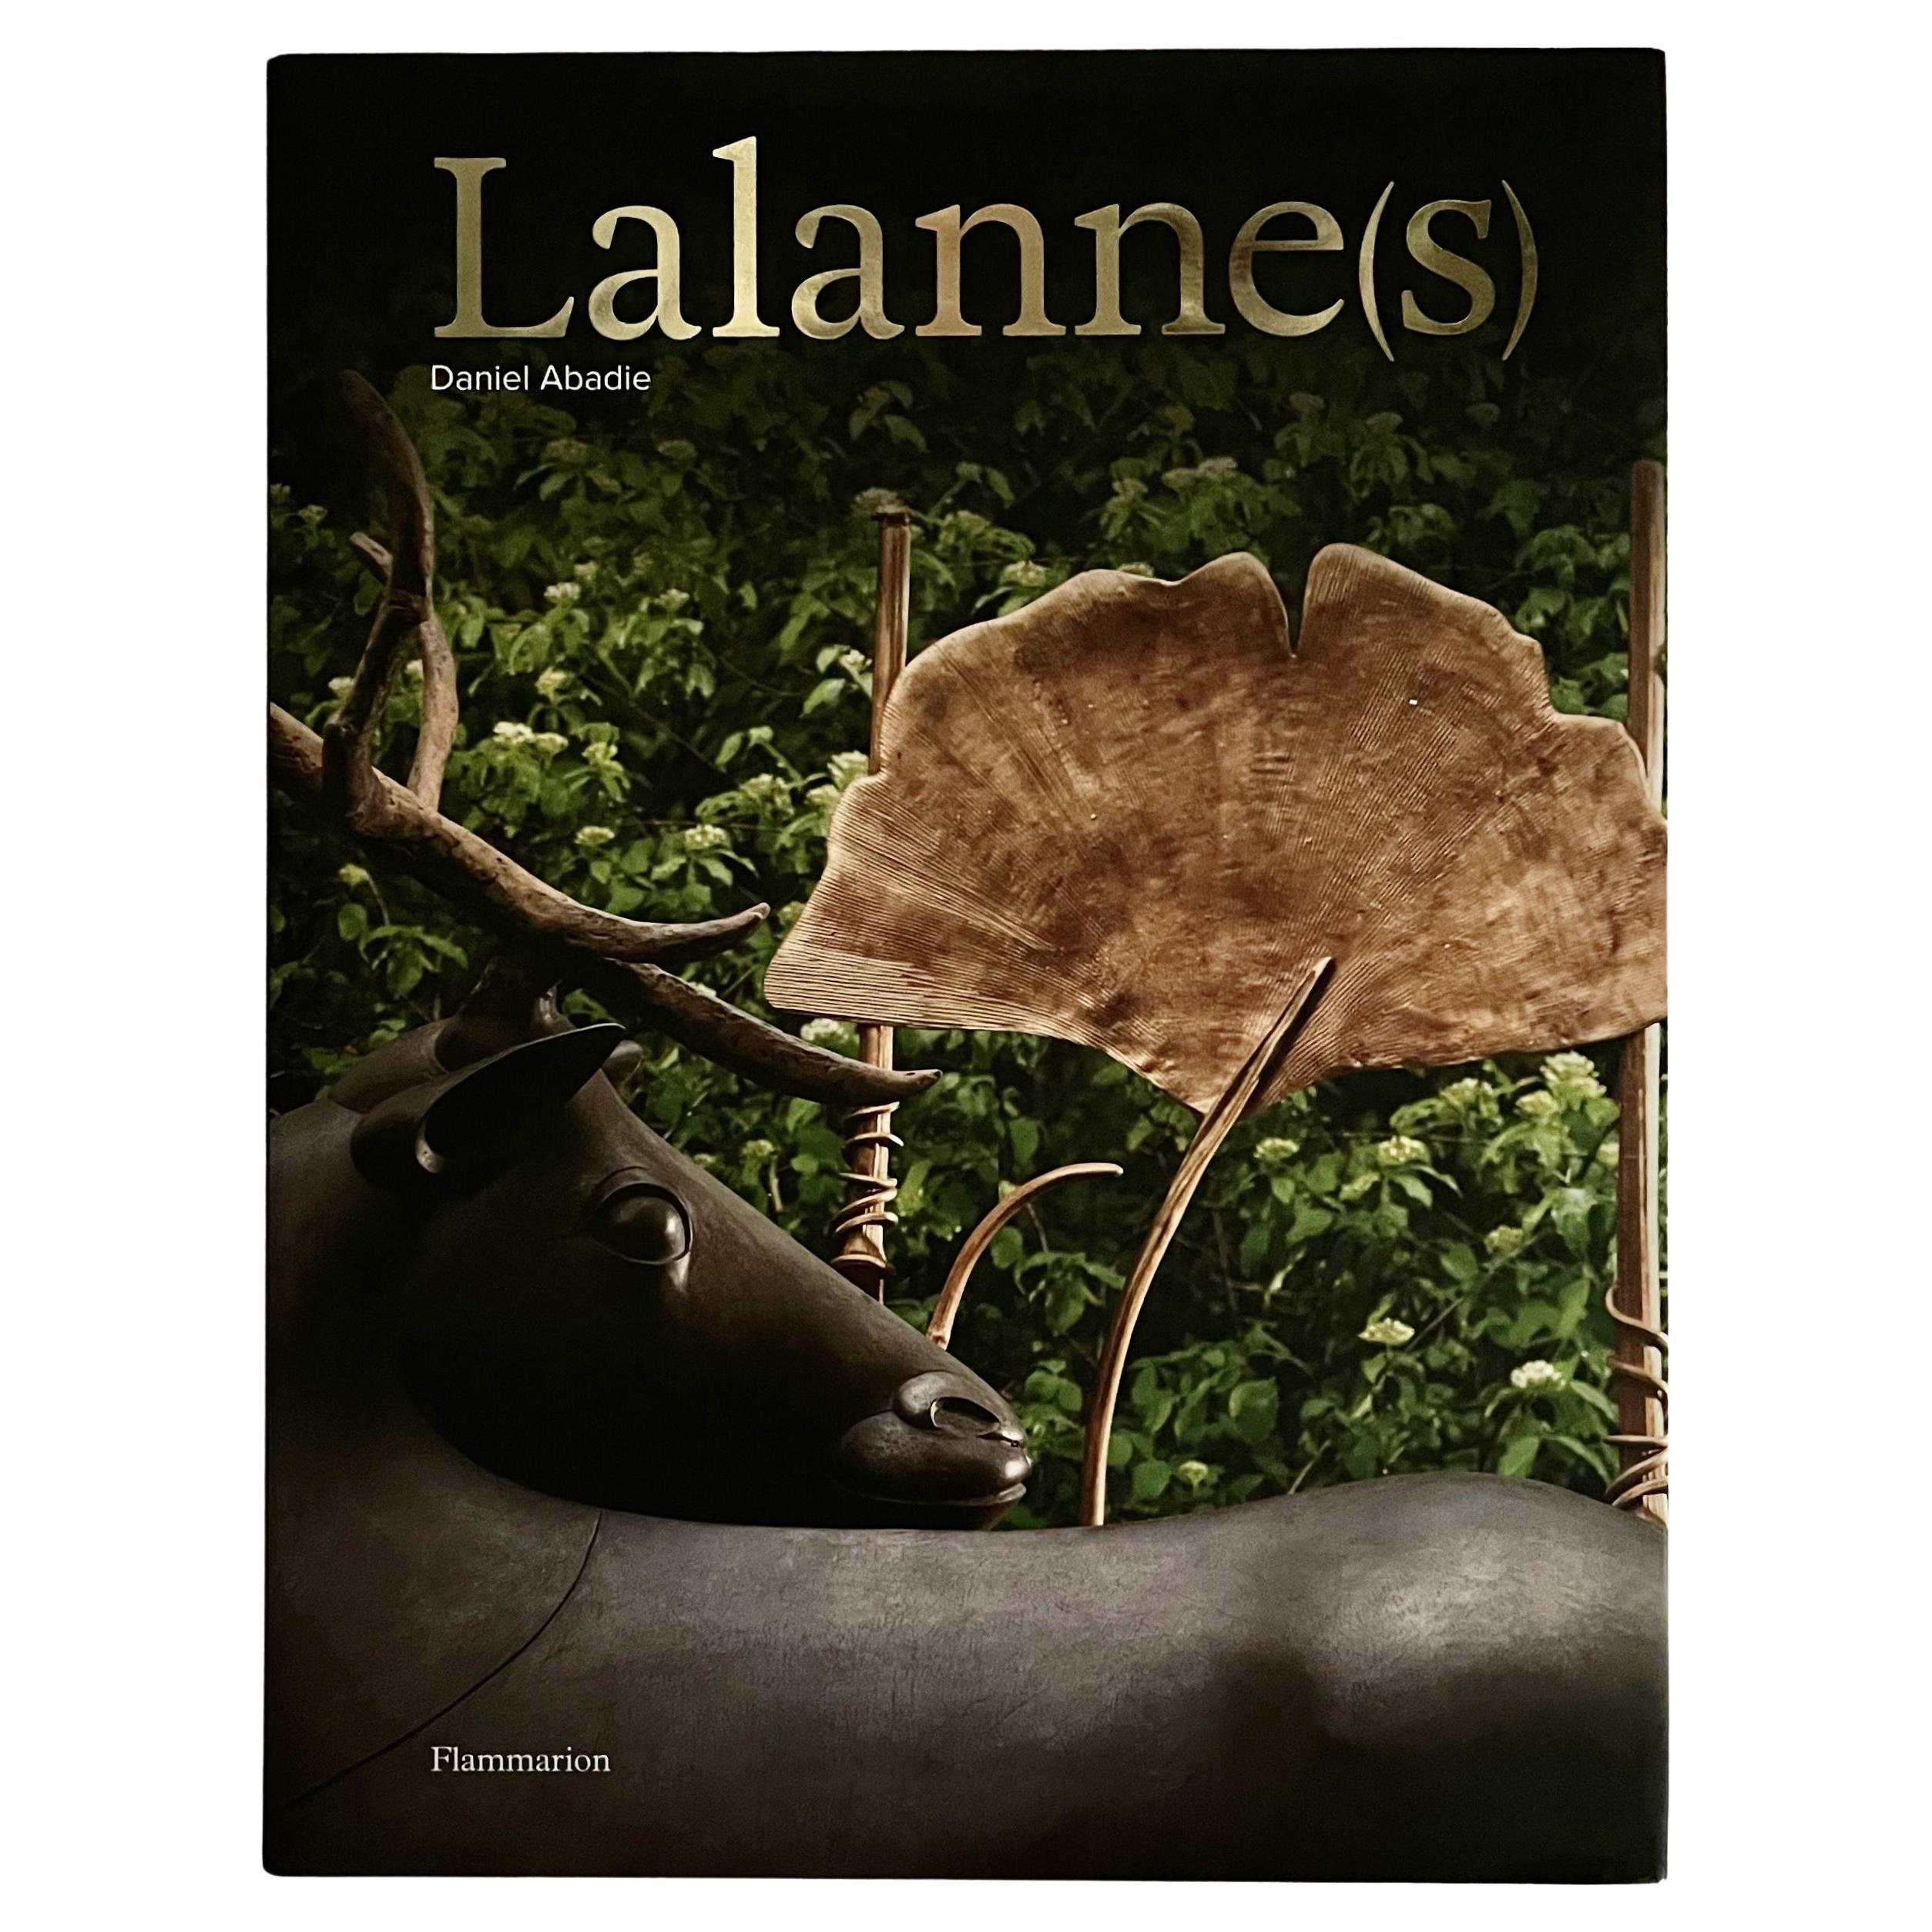 Lalanne(s) - Daniel Abadie - 1st Edition, Flammarion, Paris, 2008 For Sale